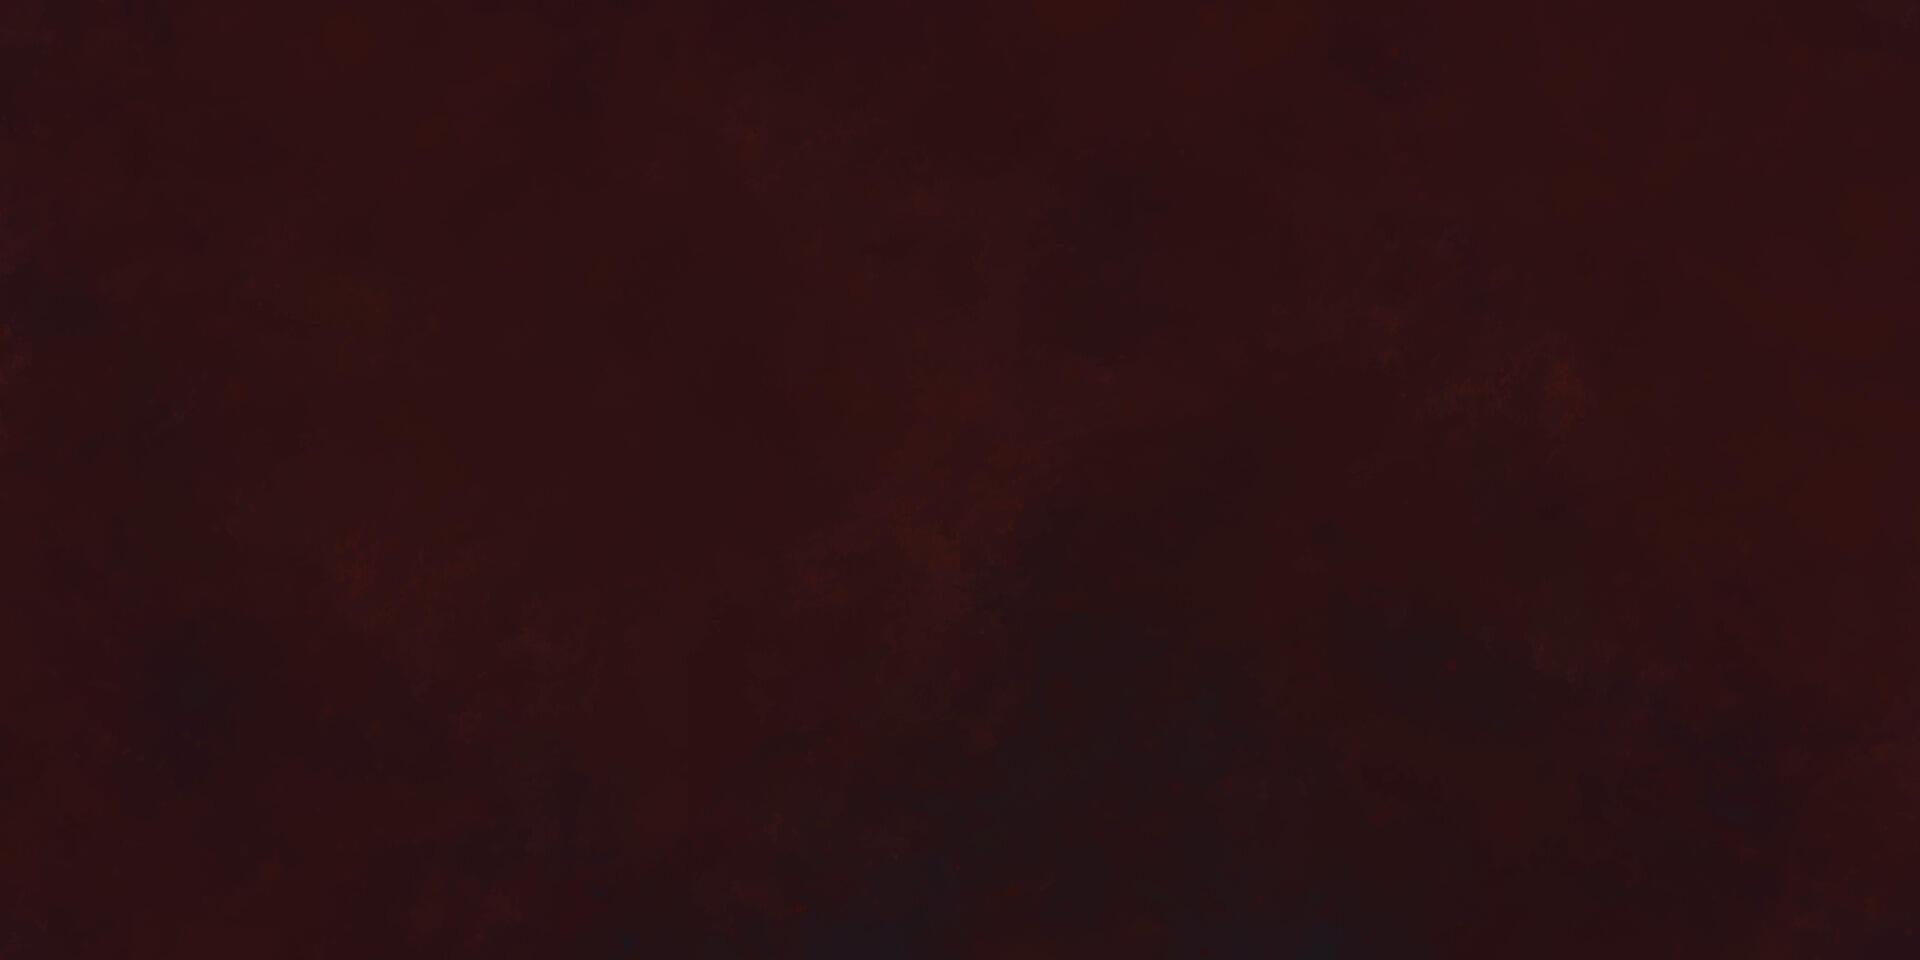 Dark grunge texture background. Dark explosion background. Abstract watercolor background texture. Black and red dirty vintage background. Dark grungy red background vector